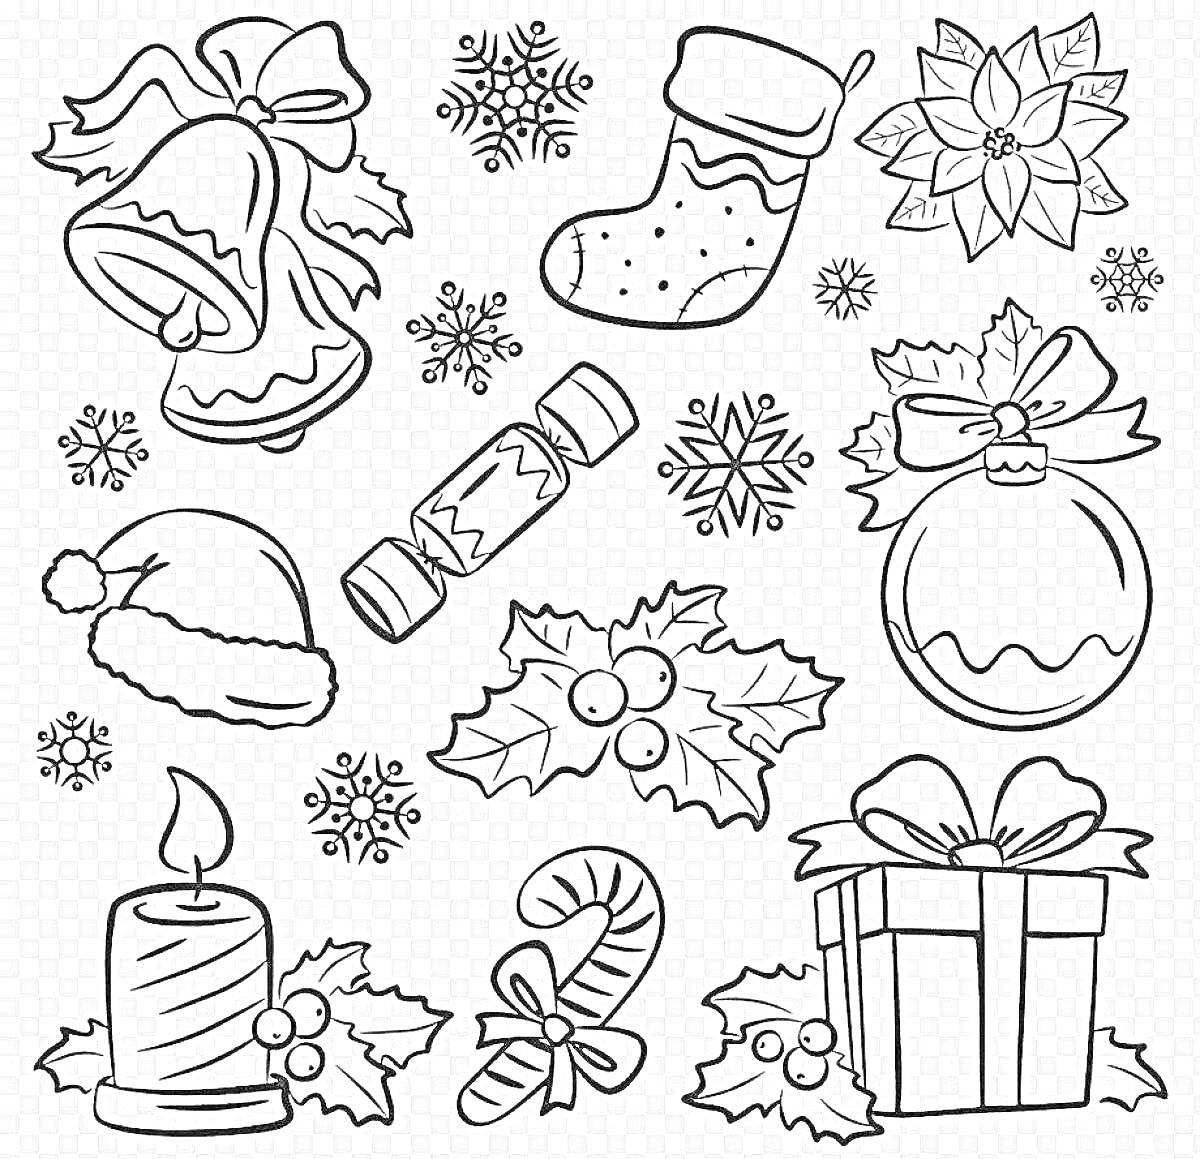 Раскраска Колокольчики, снежинки, рождественский носок, пуансеттия, колпак Санты, хлопушка, еловые веточки с ягодами, елочный шарик, свеча, карамельная трость, рождественский подарок